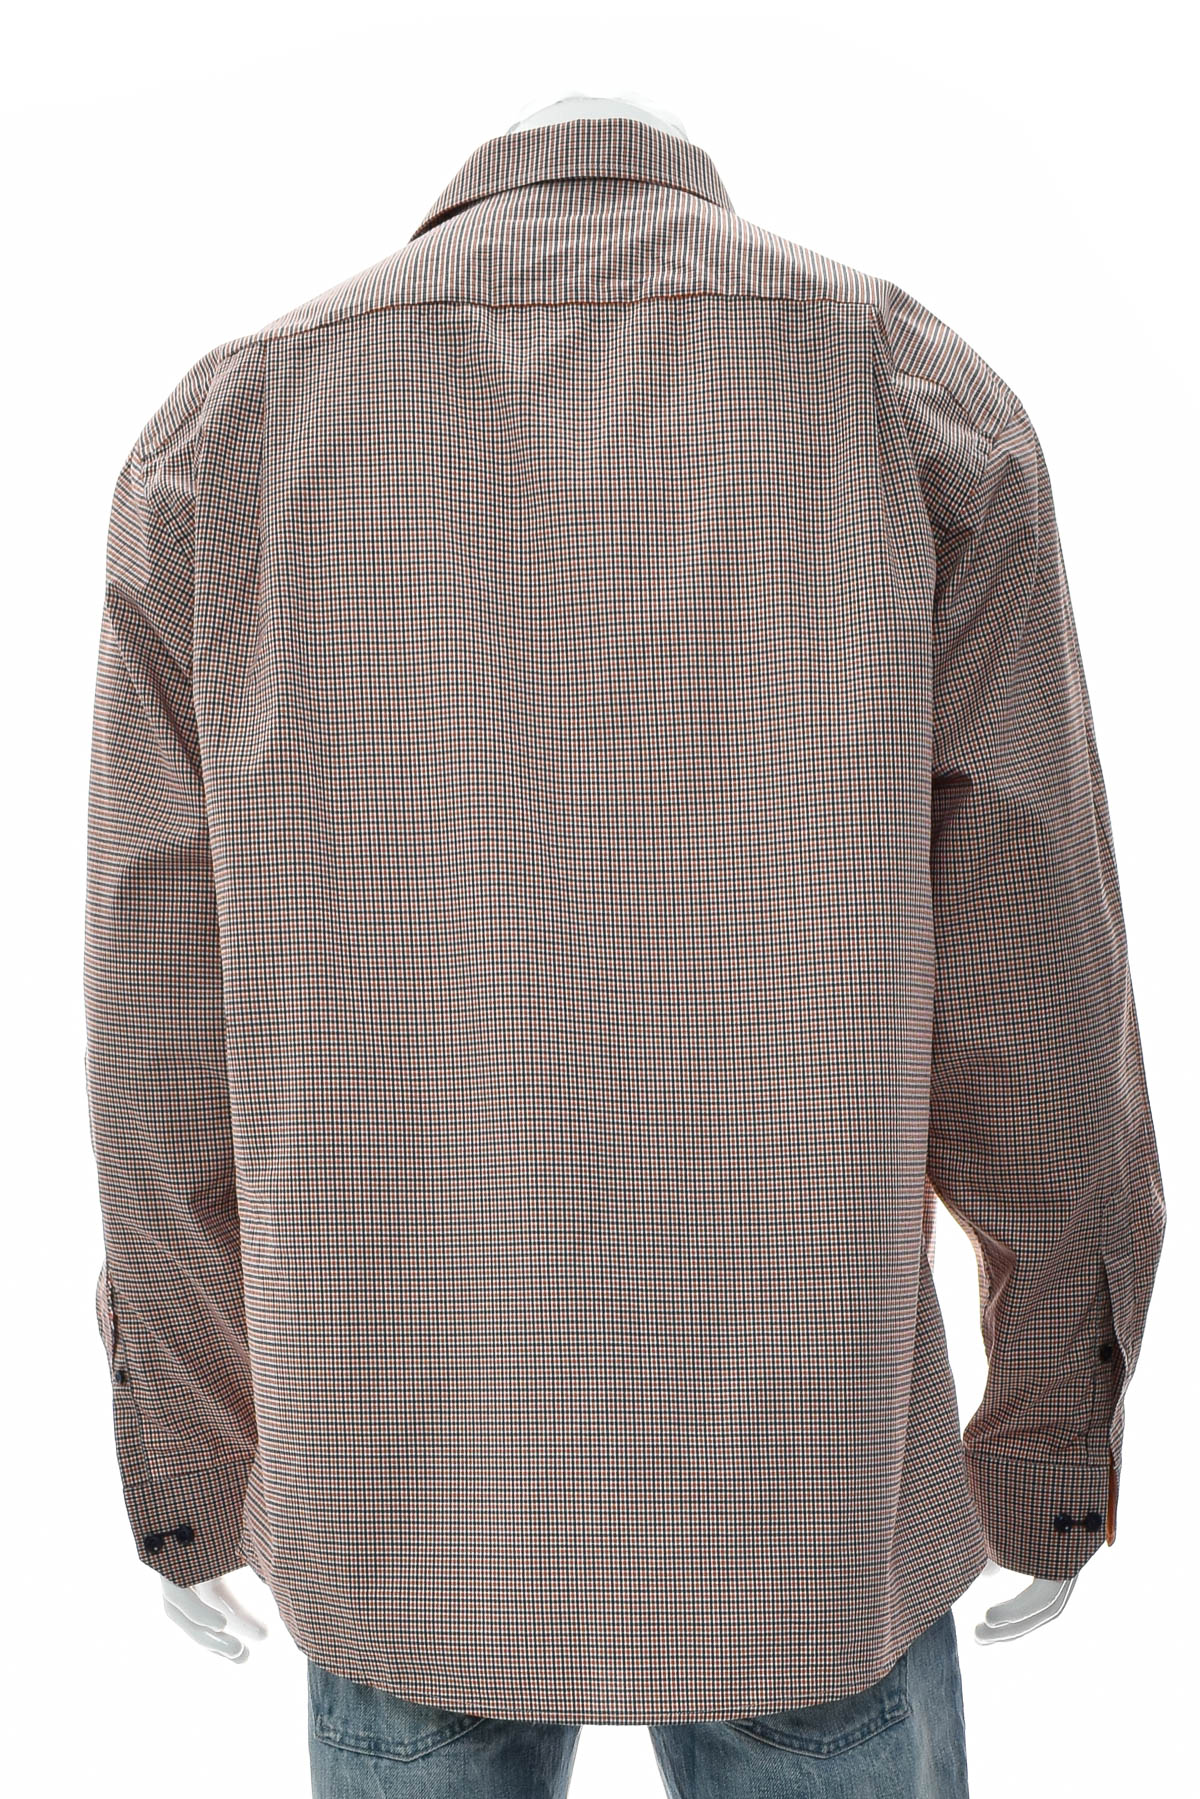 Ανδρικό πουκάμισο - ETON - 1